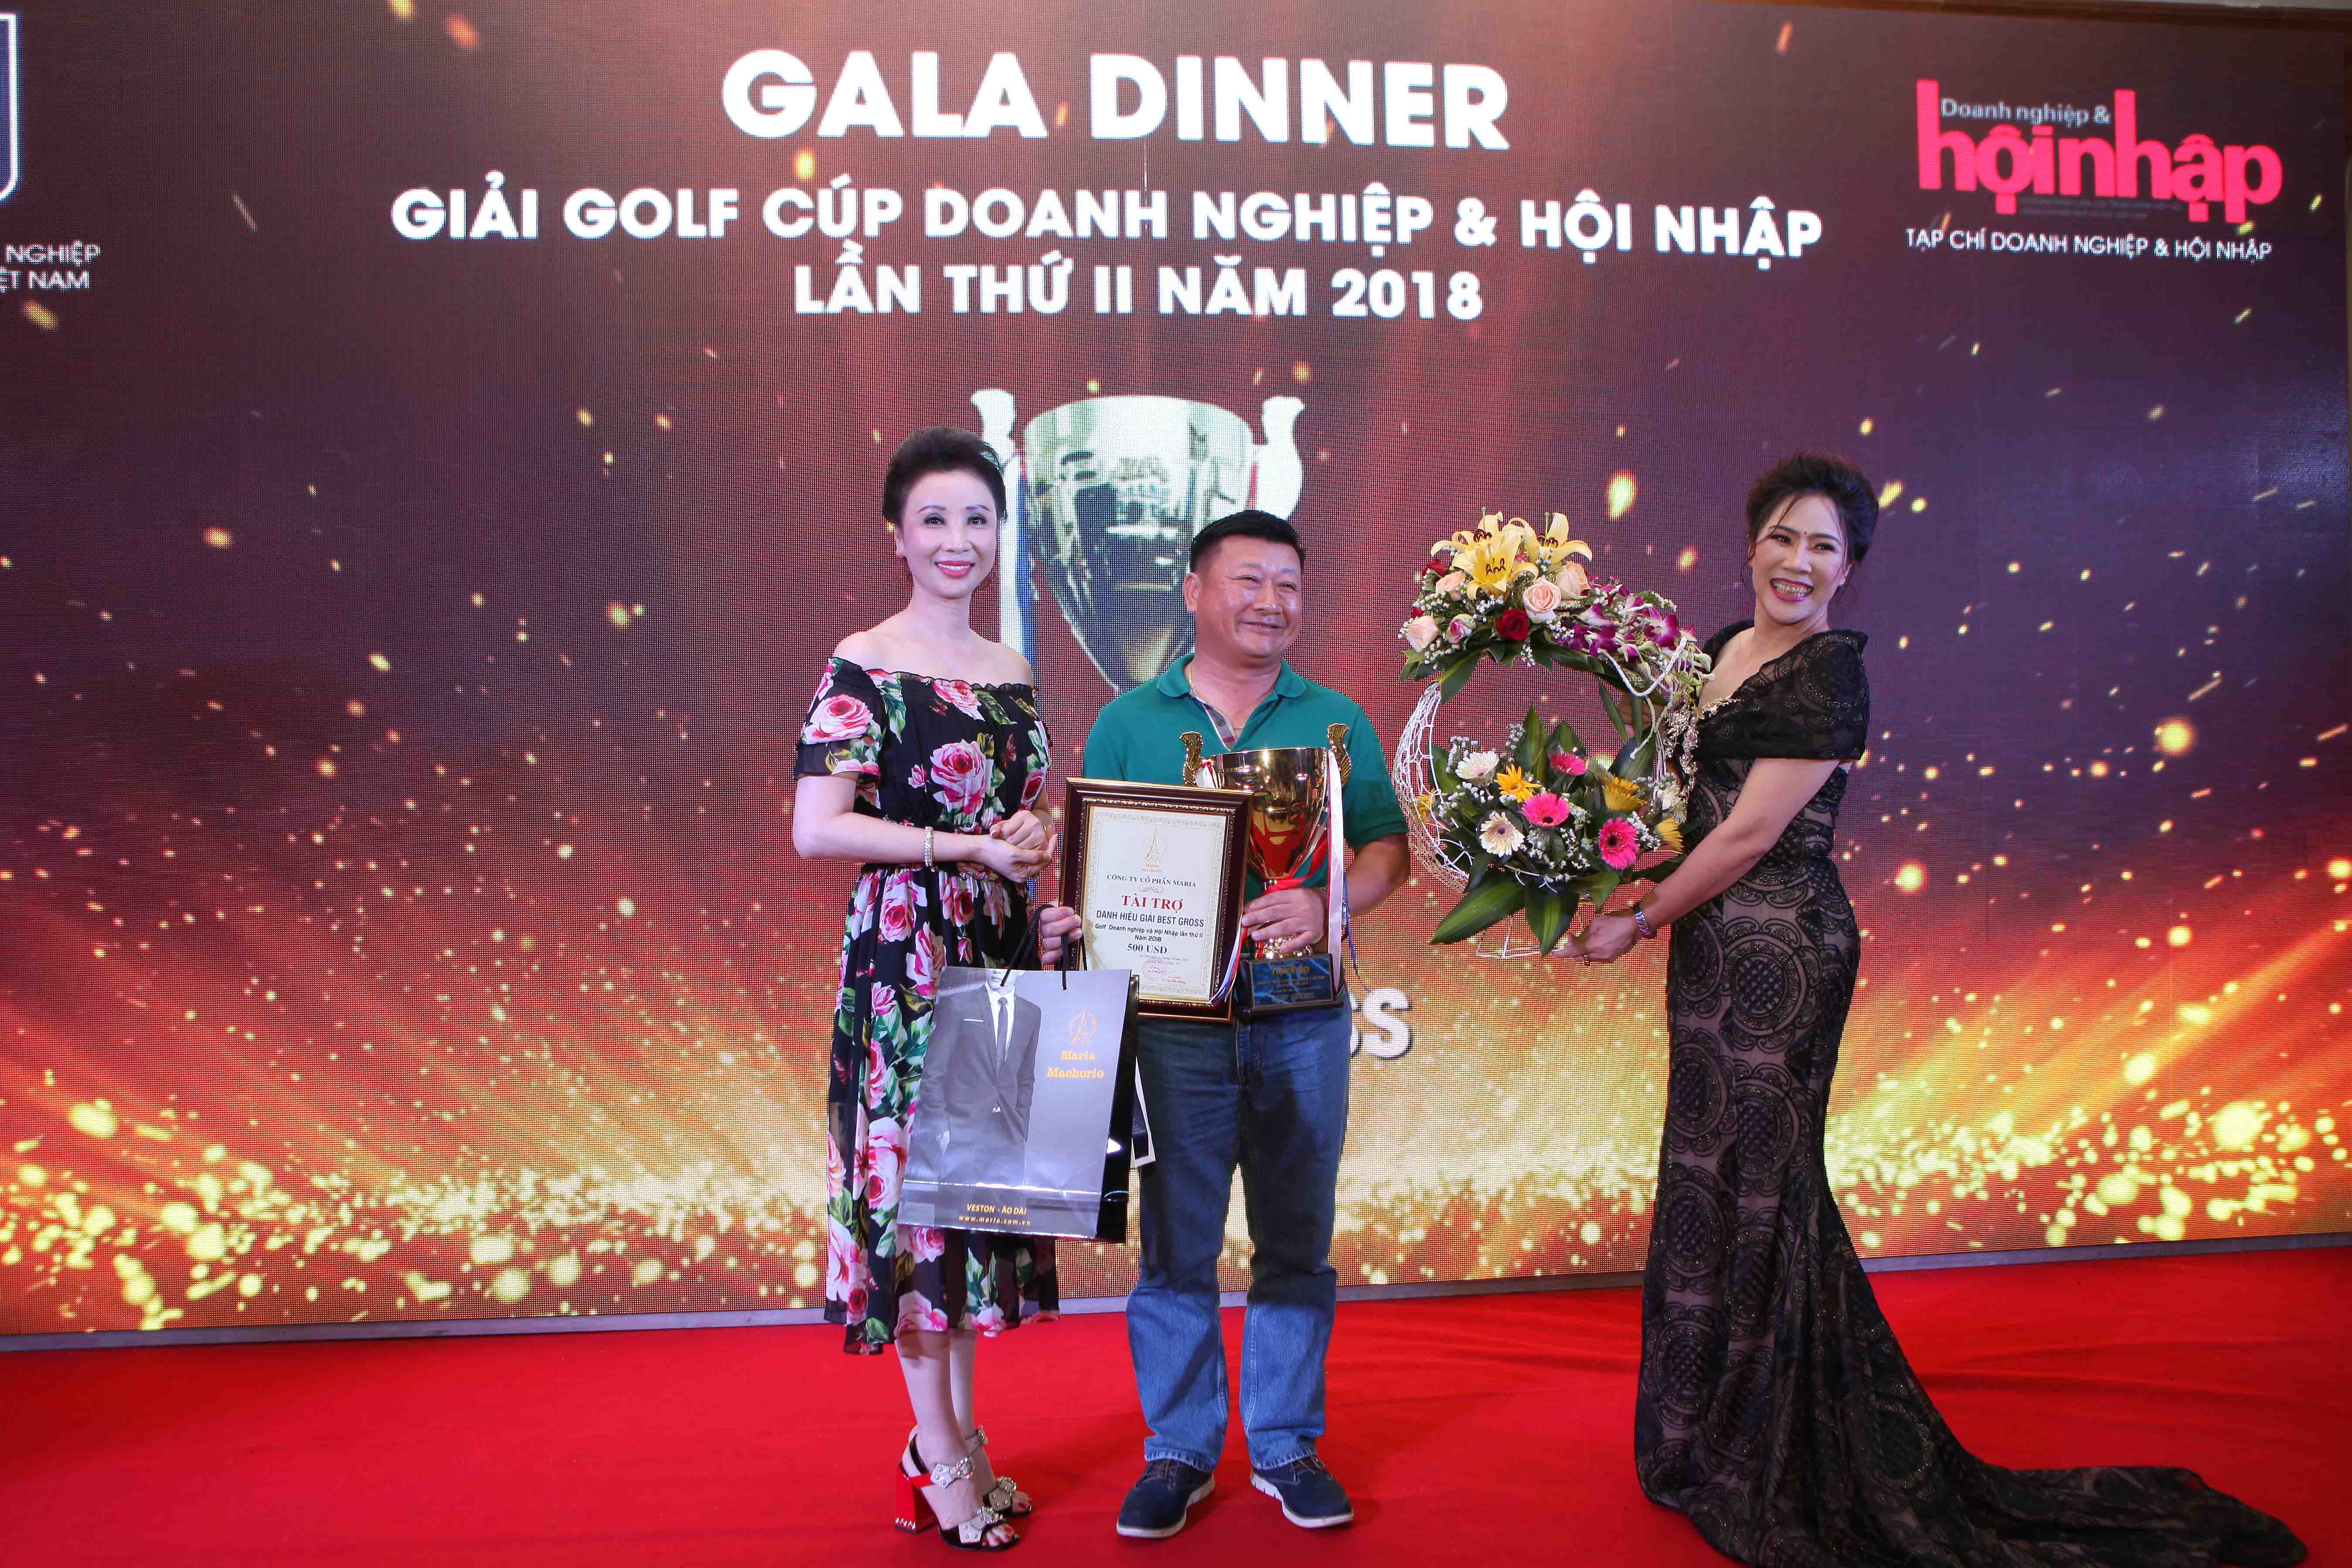 Giải golf Tranh cúp Doanh nghiệp & Hội nhập lần thứ II năm 2018: Golfer Nguyễn Đại Hải giành cúp vô địch